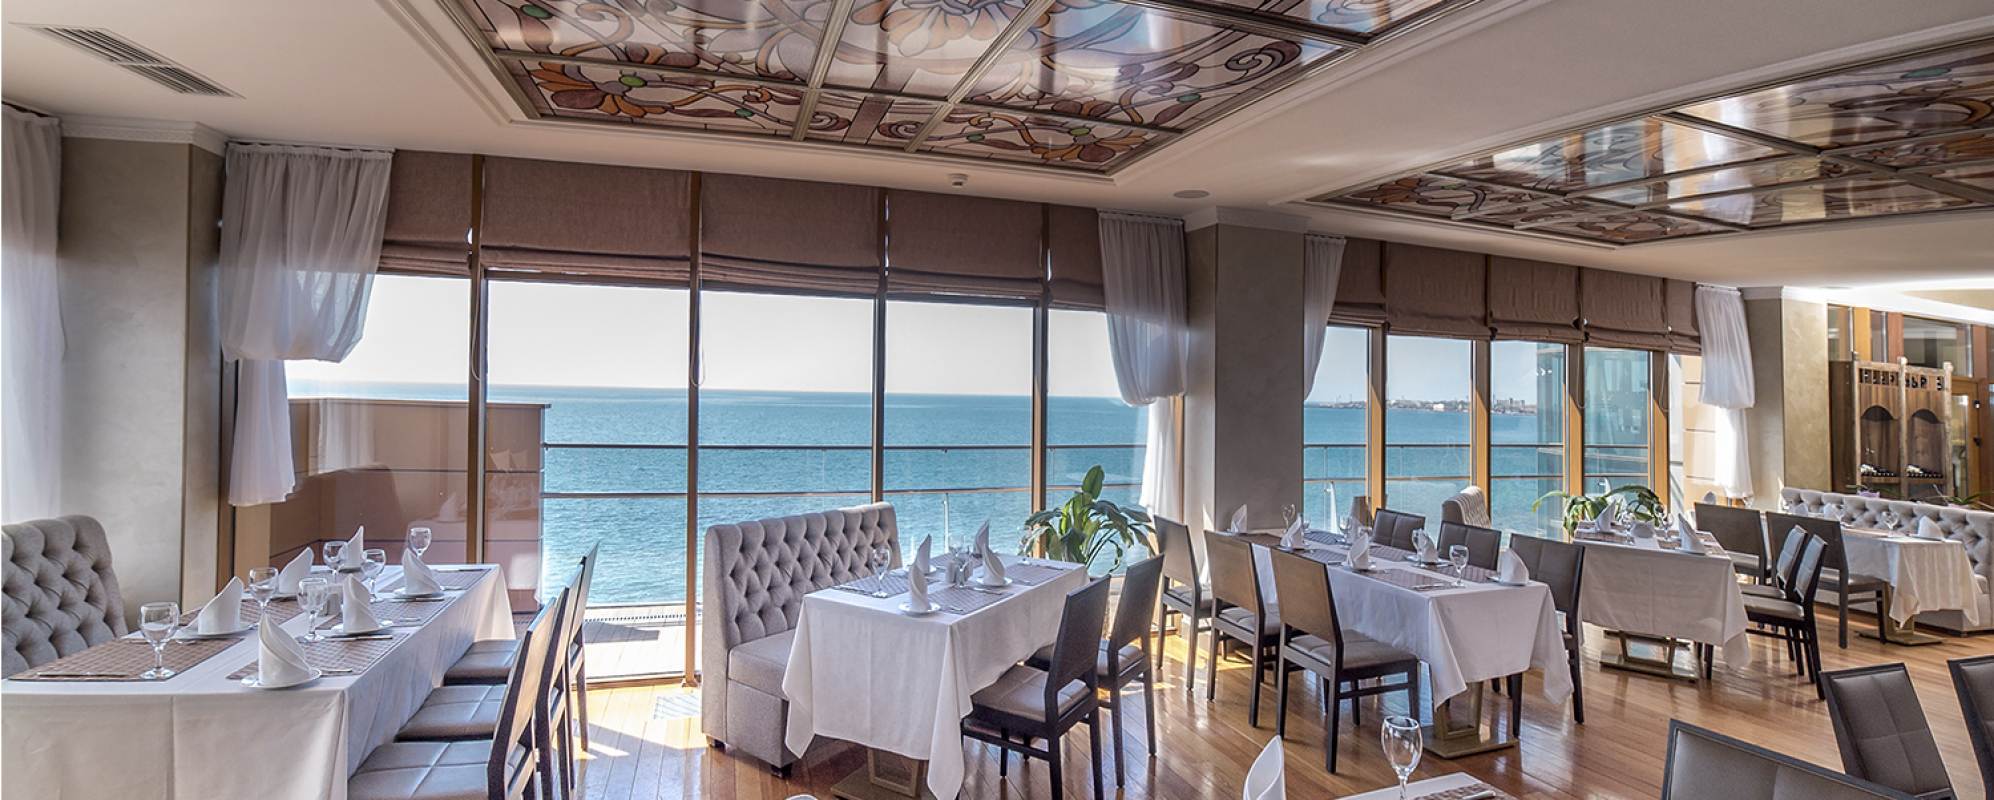 Фотографии банкетного зала Ресторан Oblaka Ribera Resort&SPA